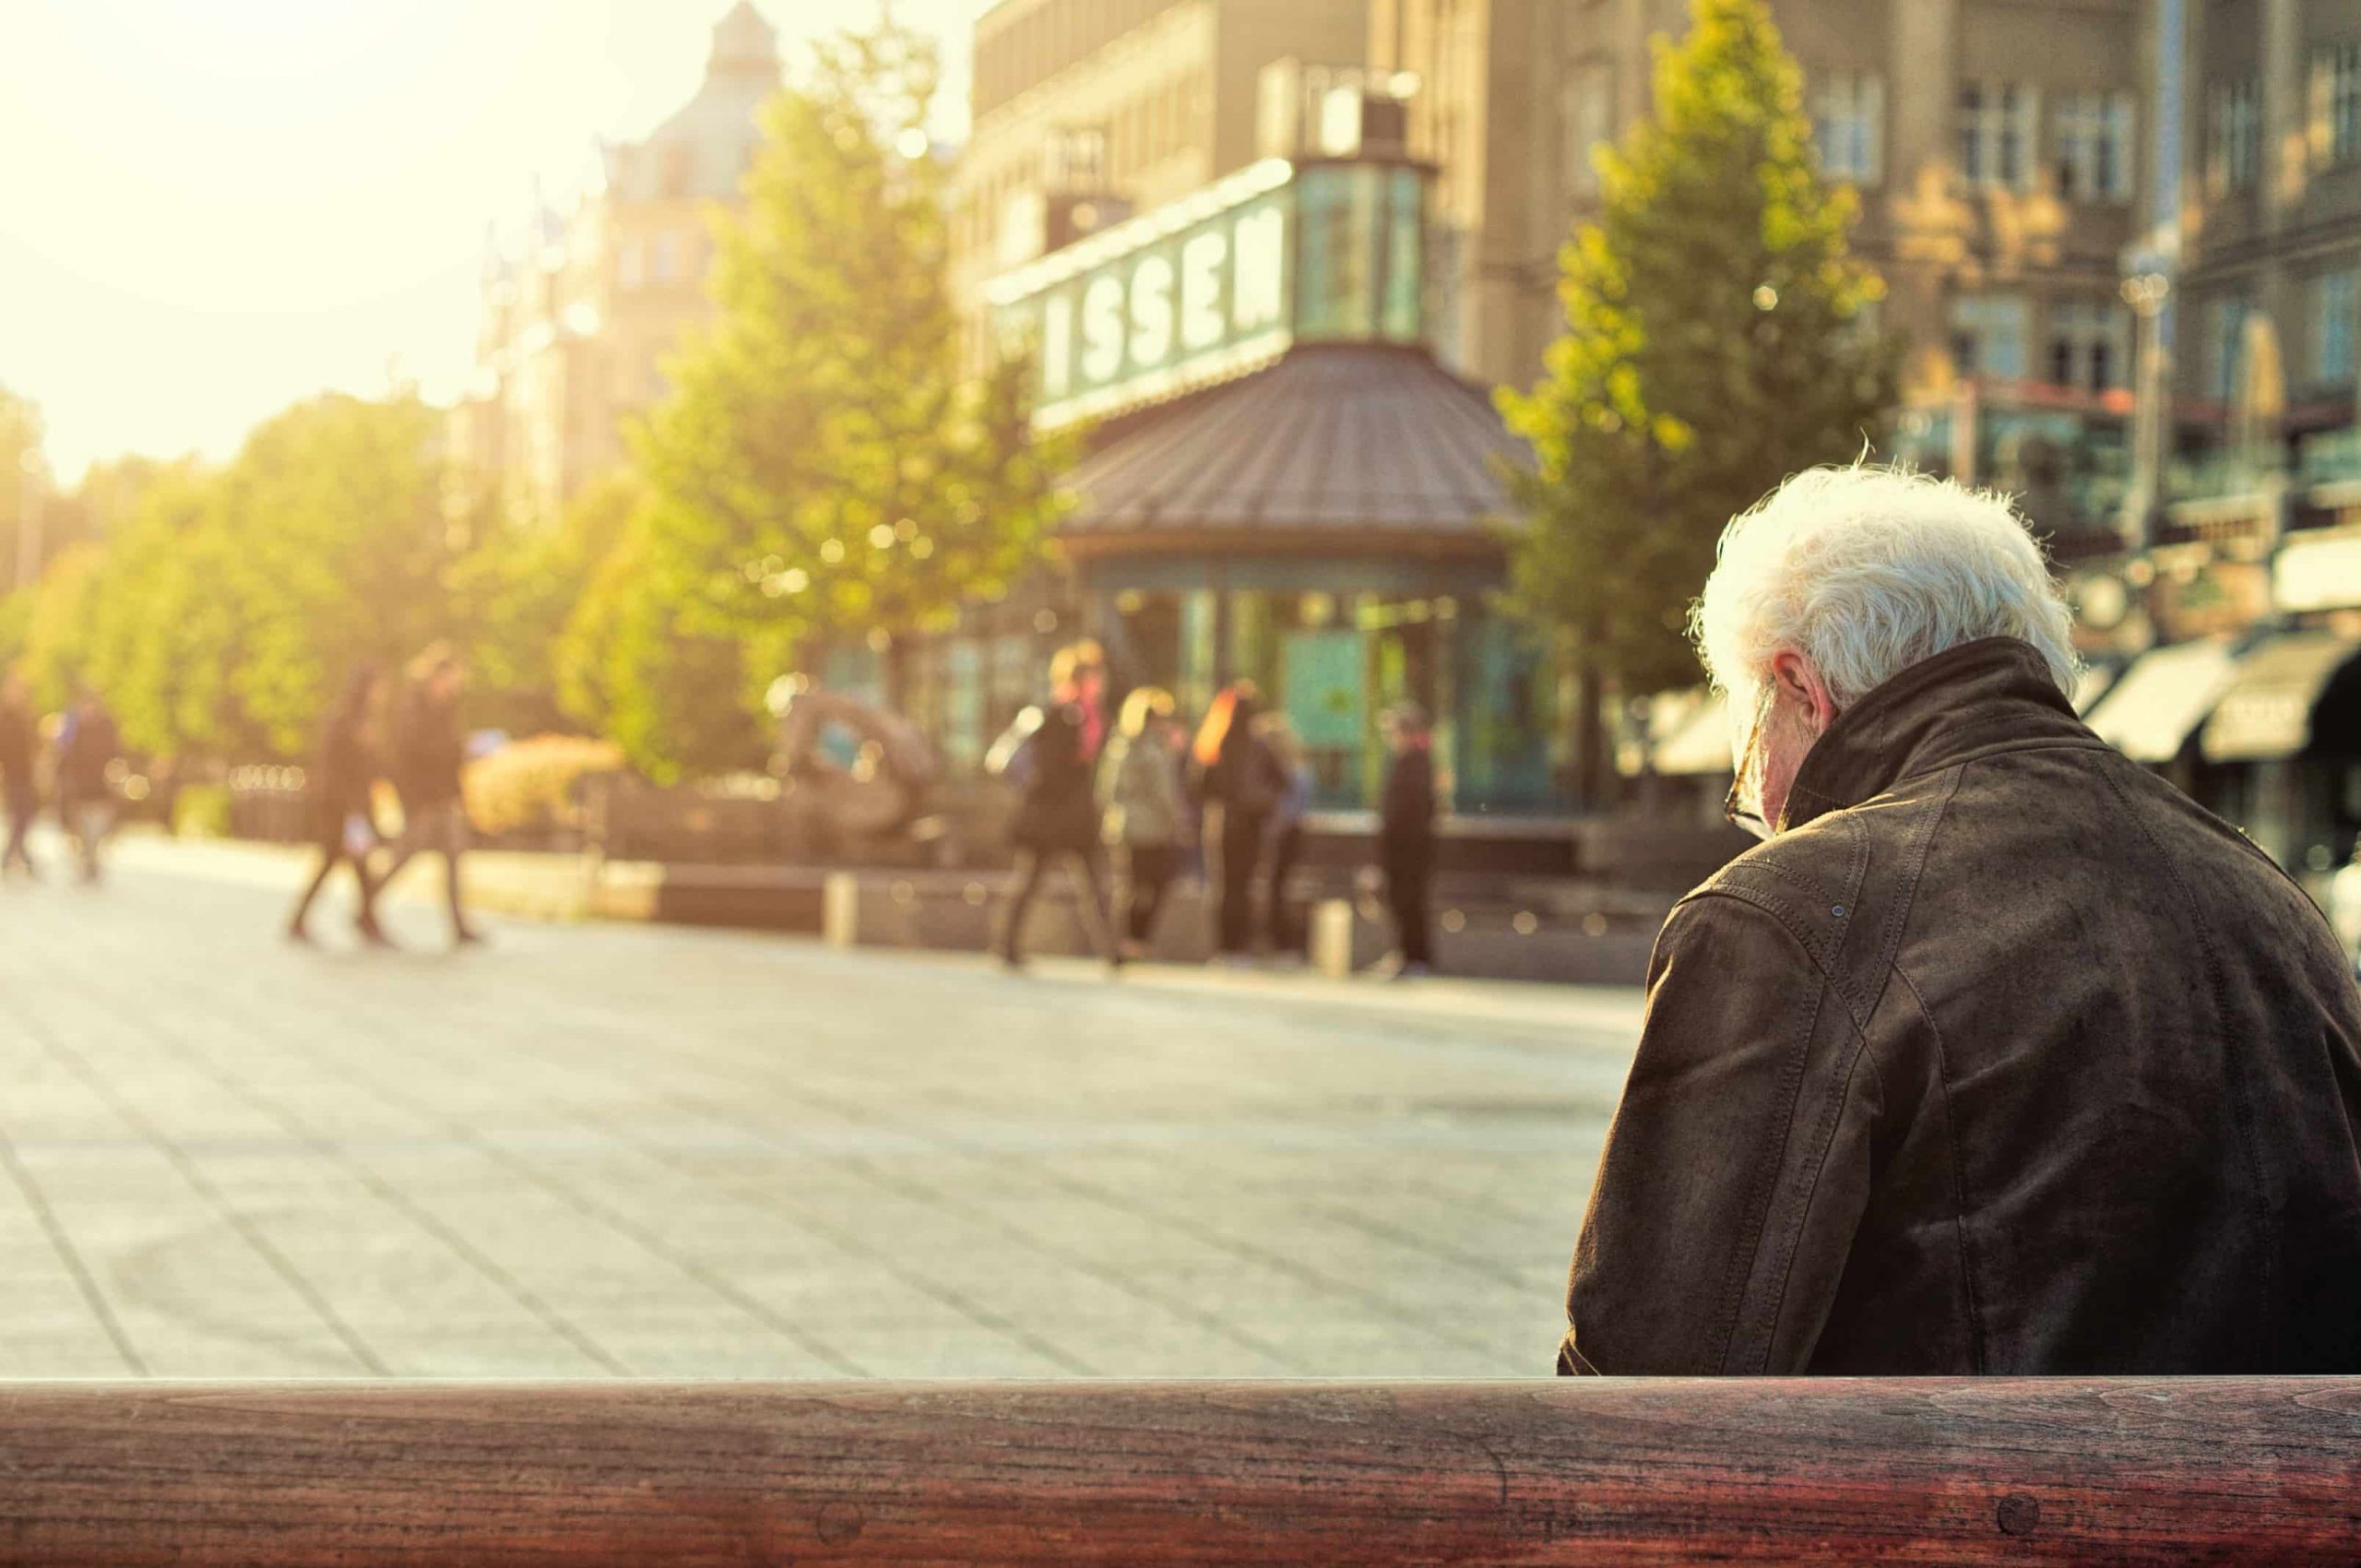 Older gentleman standing alone in the city